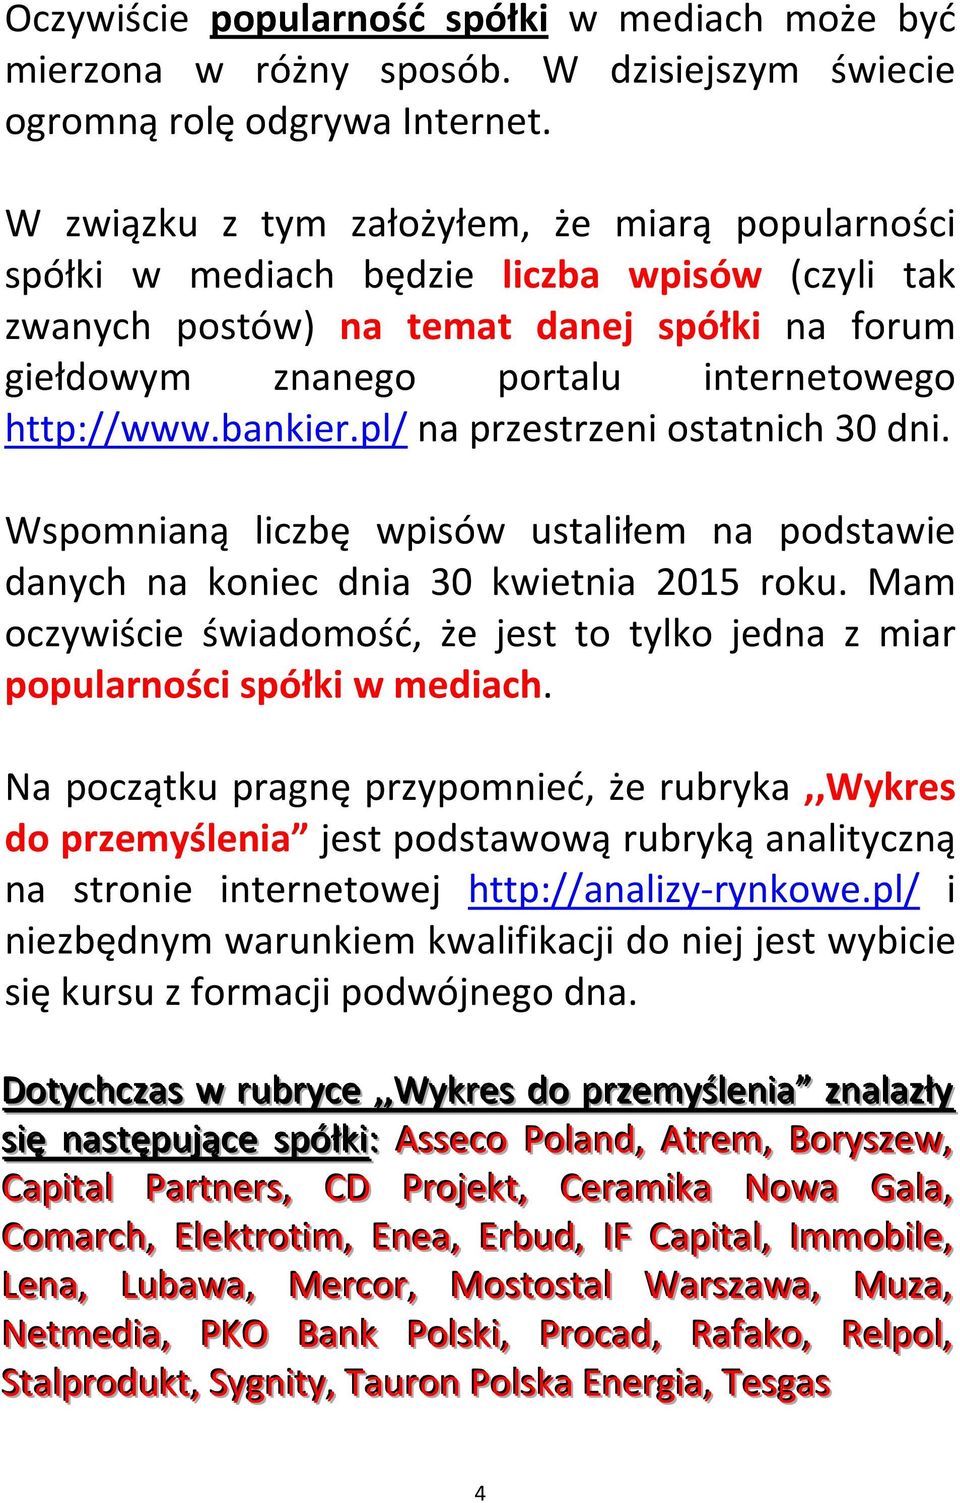 bankier.pl/ na przestrzeni ostatnich 30 dni. Wspomnianą liczbę wpisów ustaliłem na podstawie danych na koniec dnia 30 kwietnia 2015 roku.